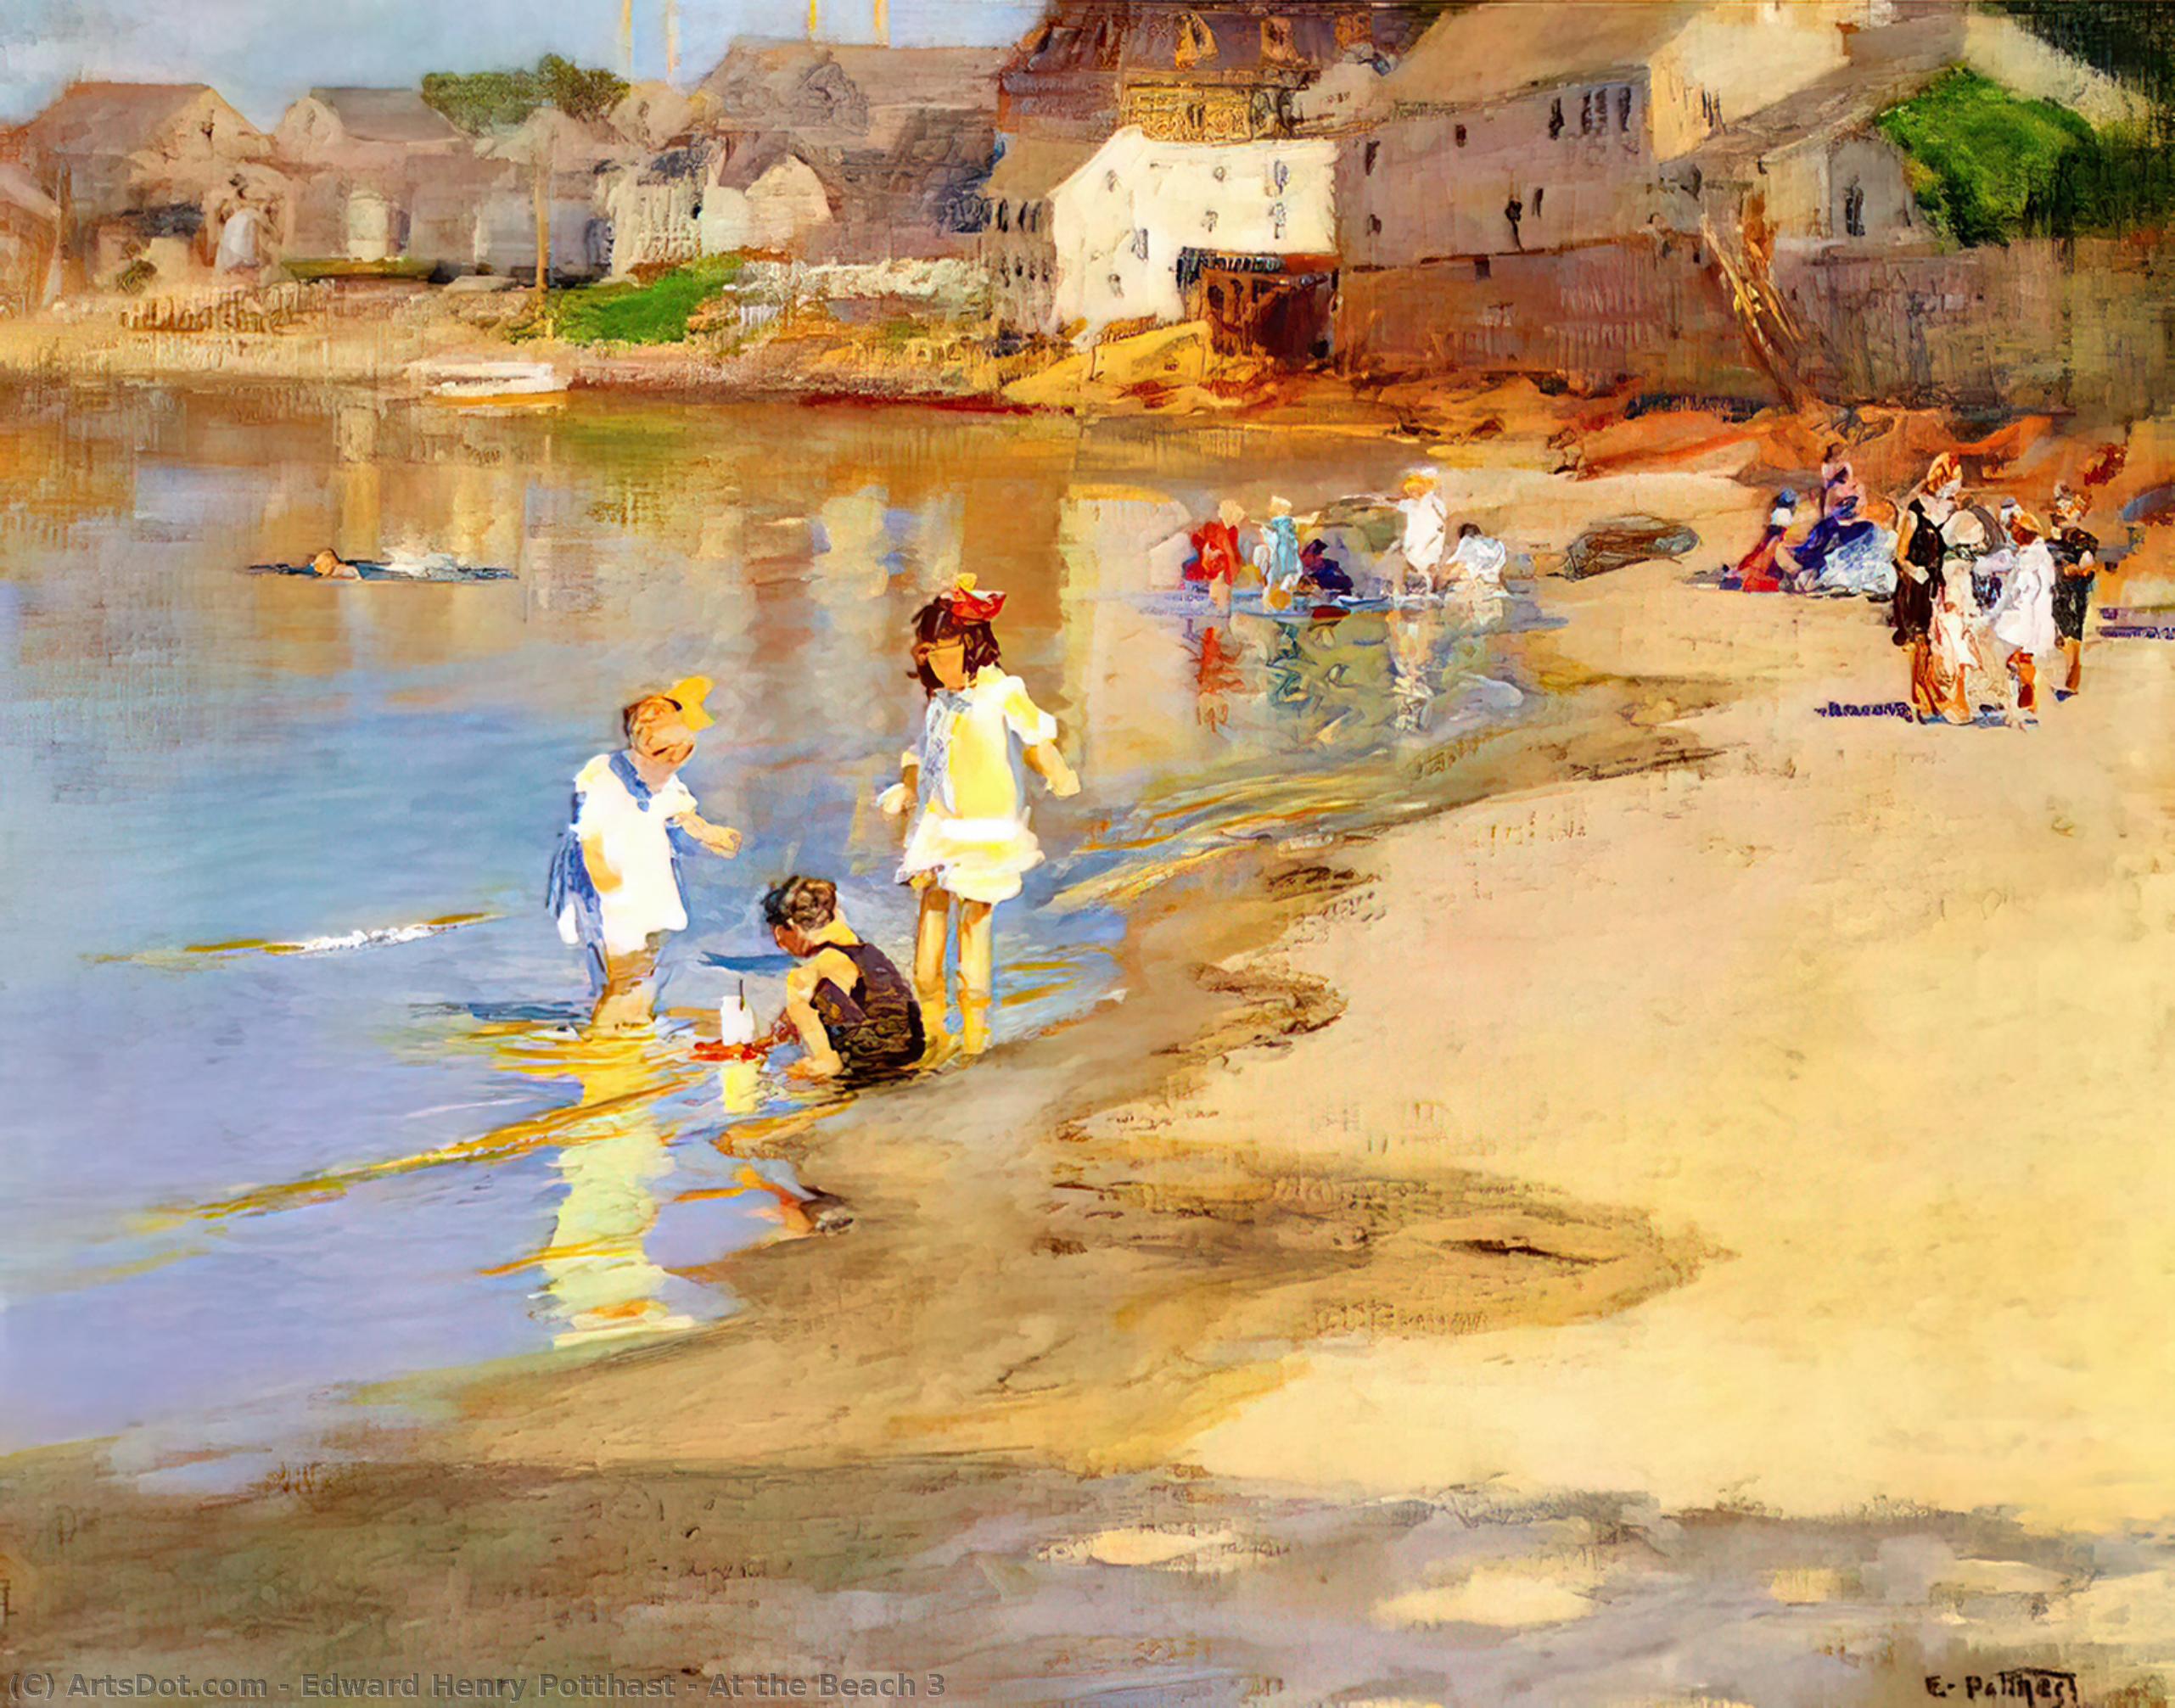 WikiOO.org - Enciclopédia das Belas Artes - Pintura, Arte por Edward Henry Potthast - At the Beach 3